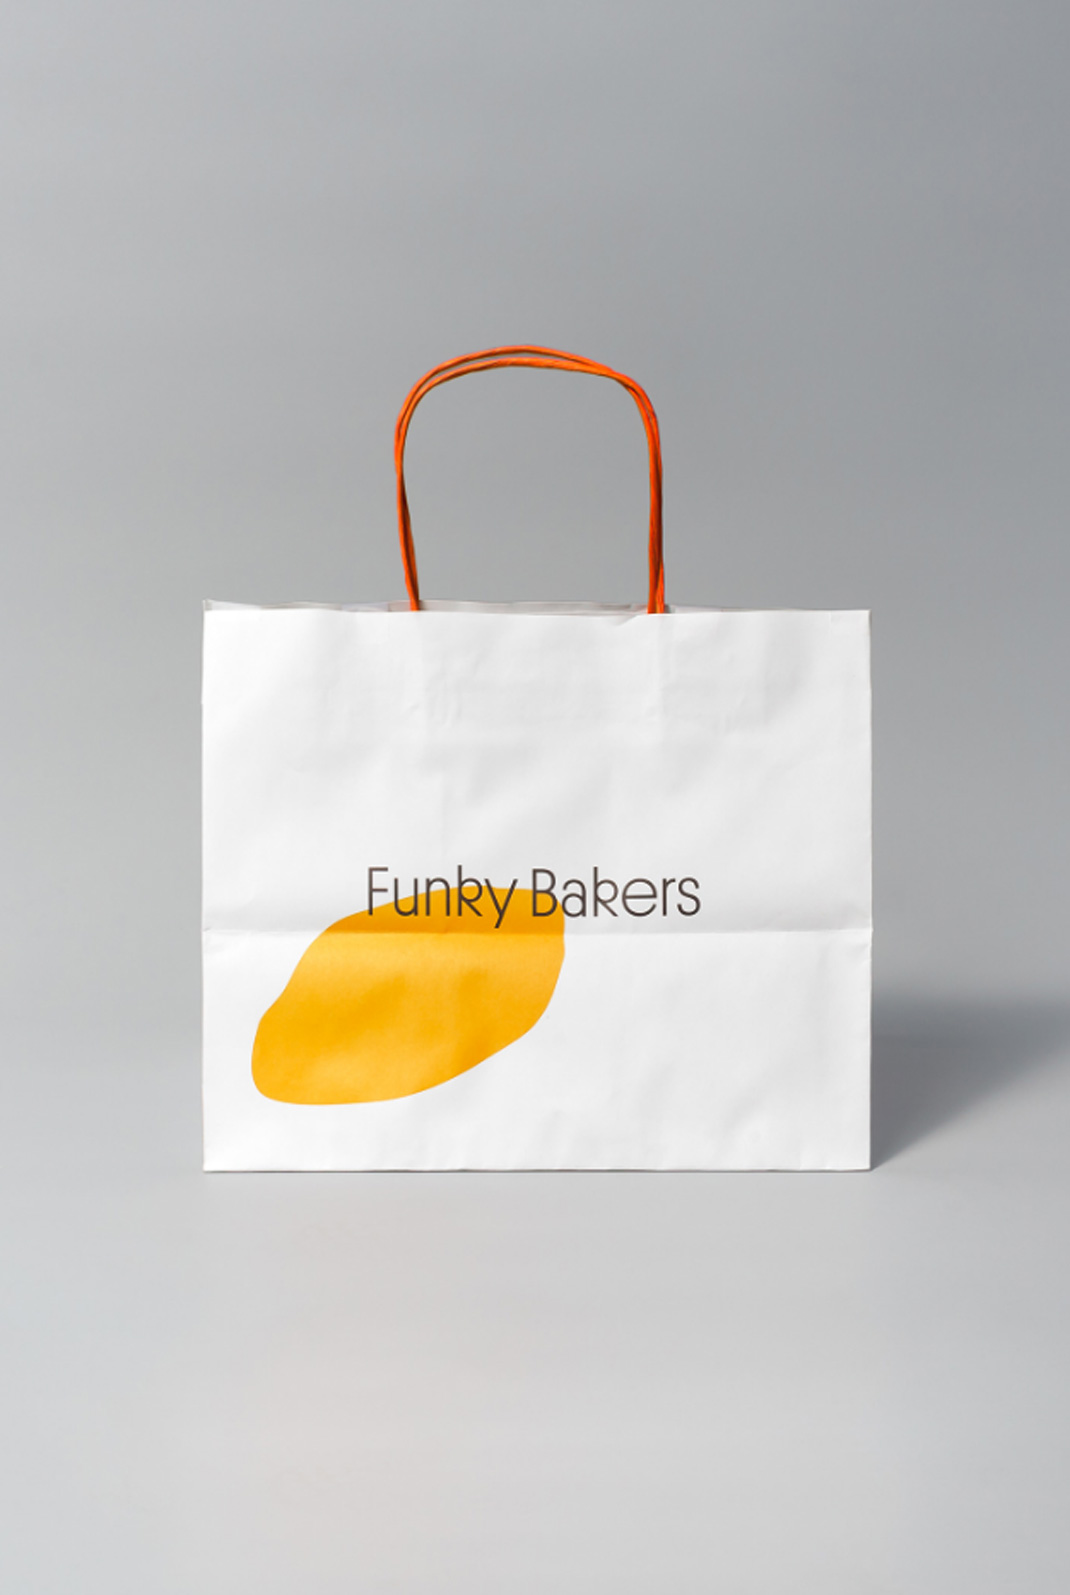 时髦面包店Funky Bakers 西班牙 面包店 包装设计 logo设计 vi设计 空间设计